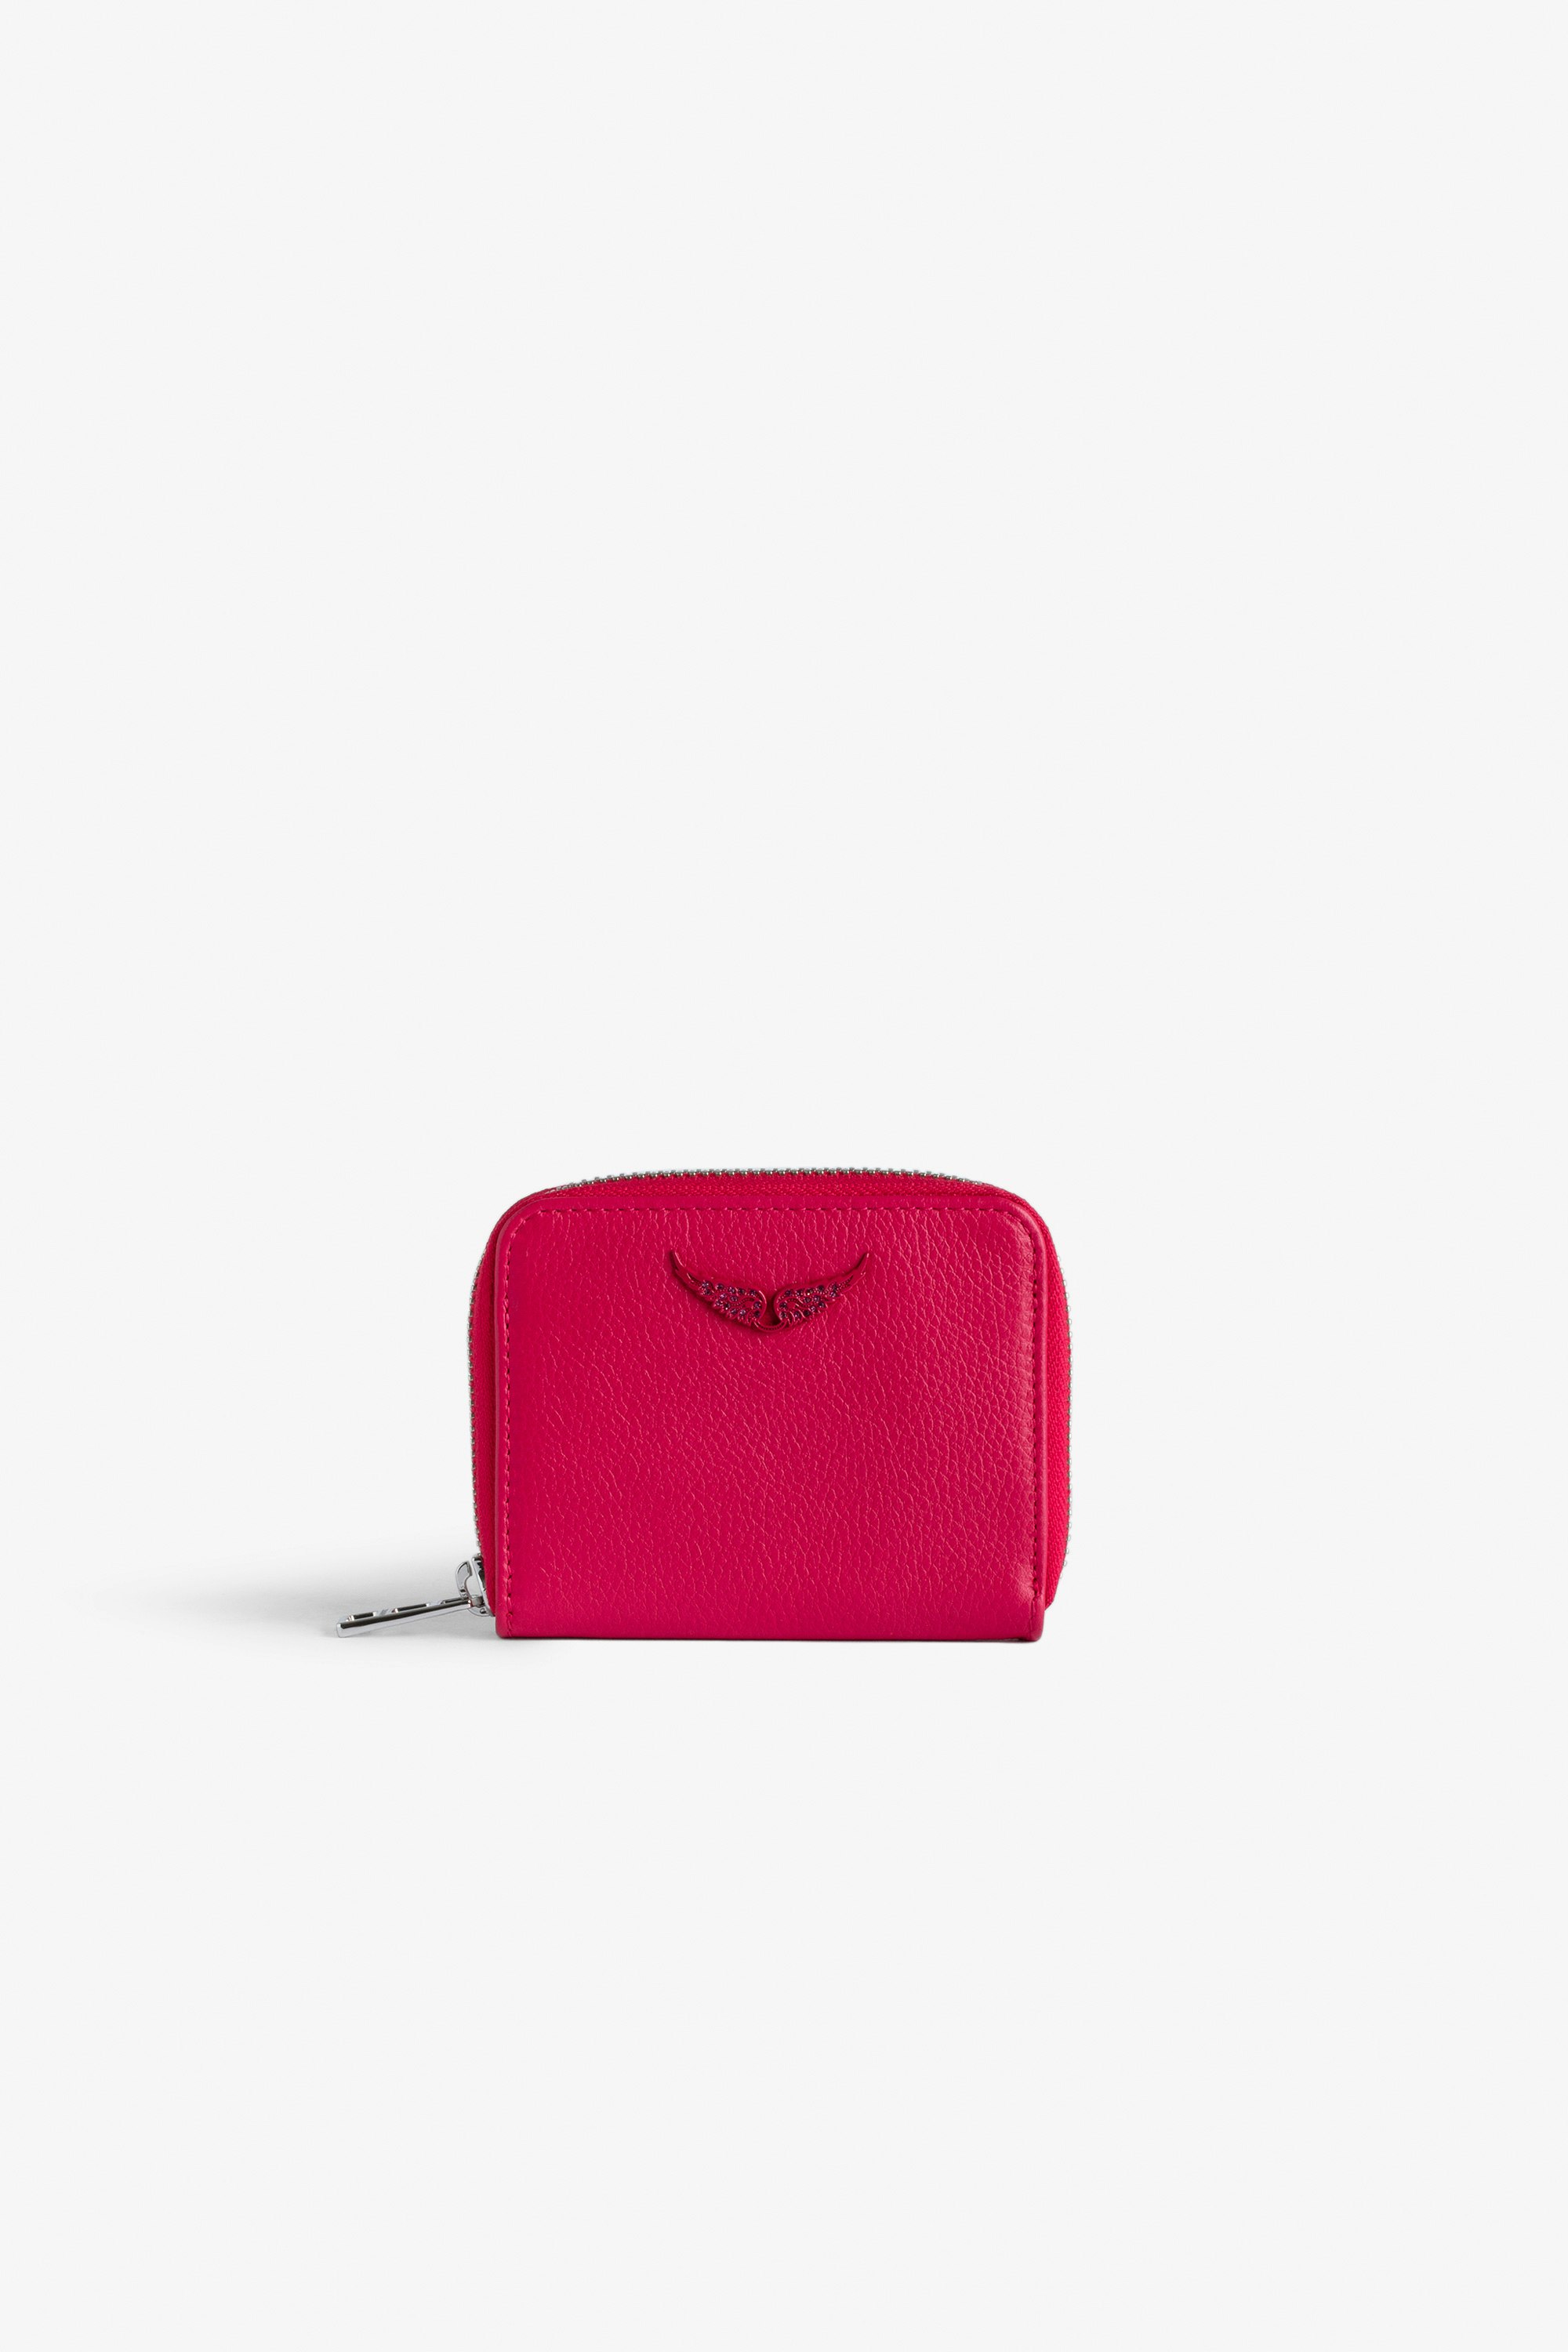 Portamonete Mini ZV Portafoglio in pelle granulata rosa con charm ali in strass da donna.